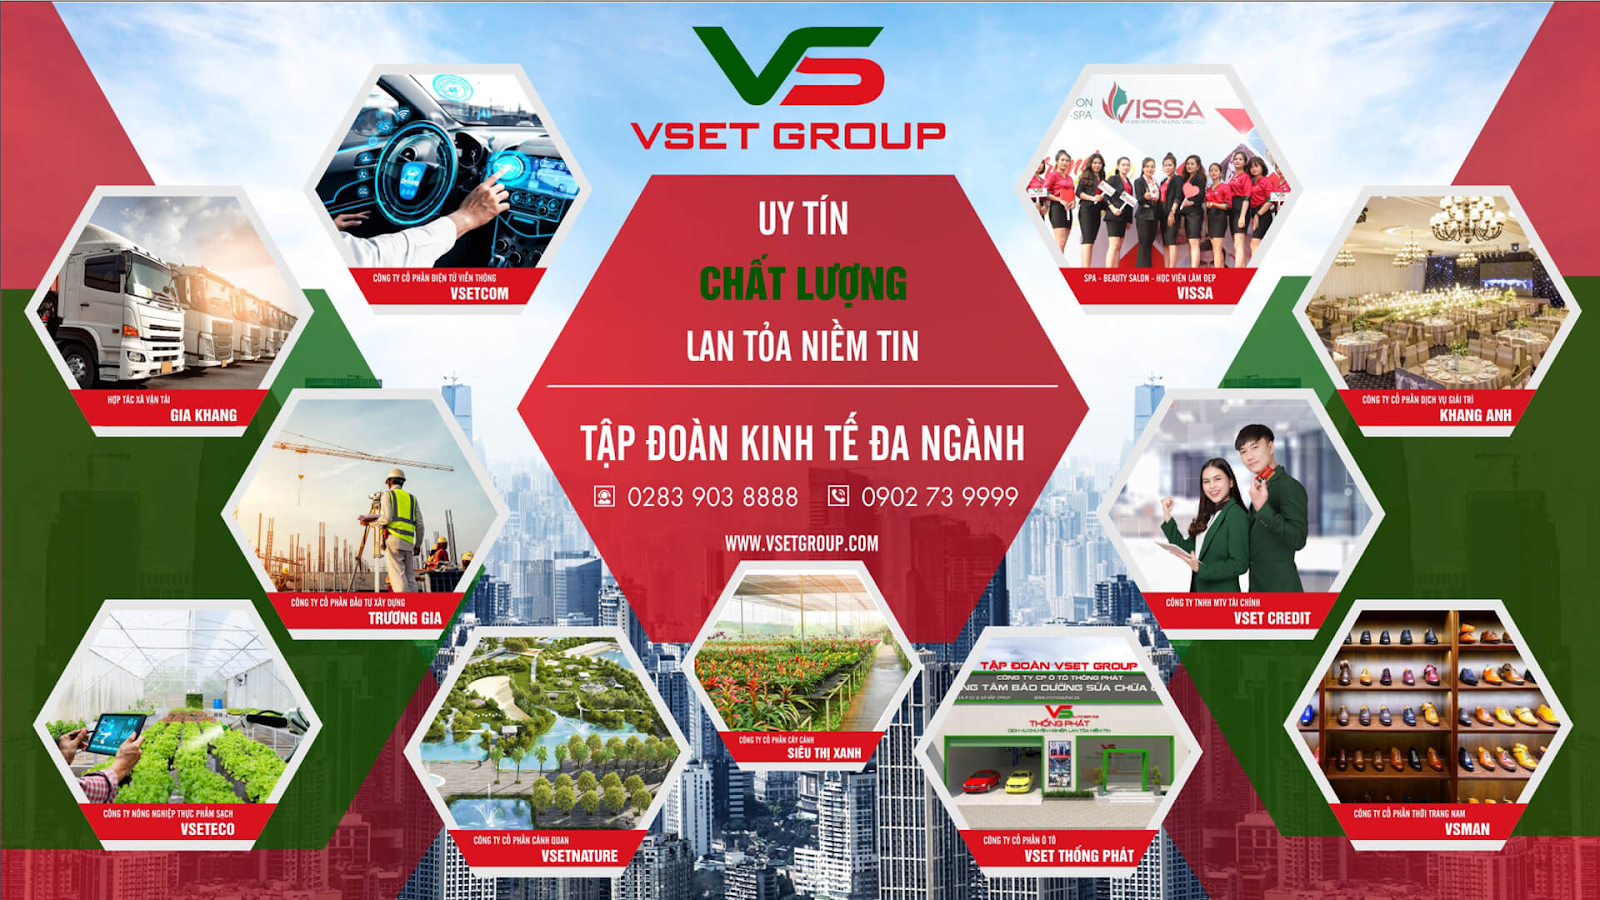 VsetGroup là tập đoàn gì?